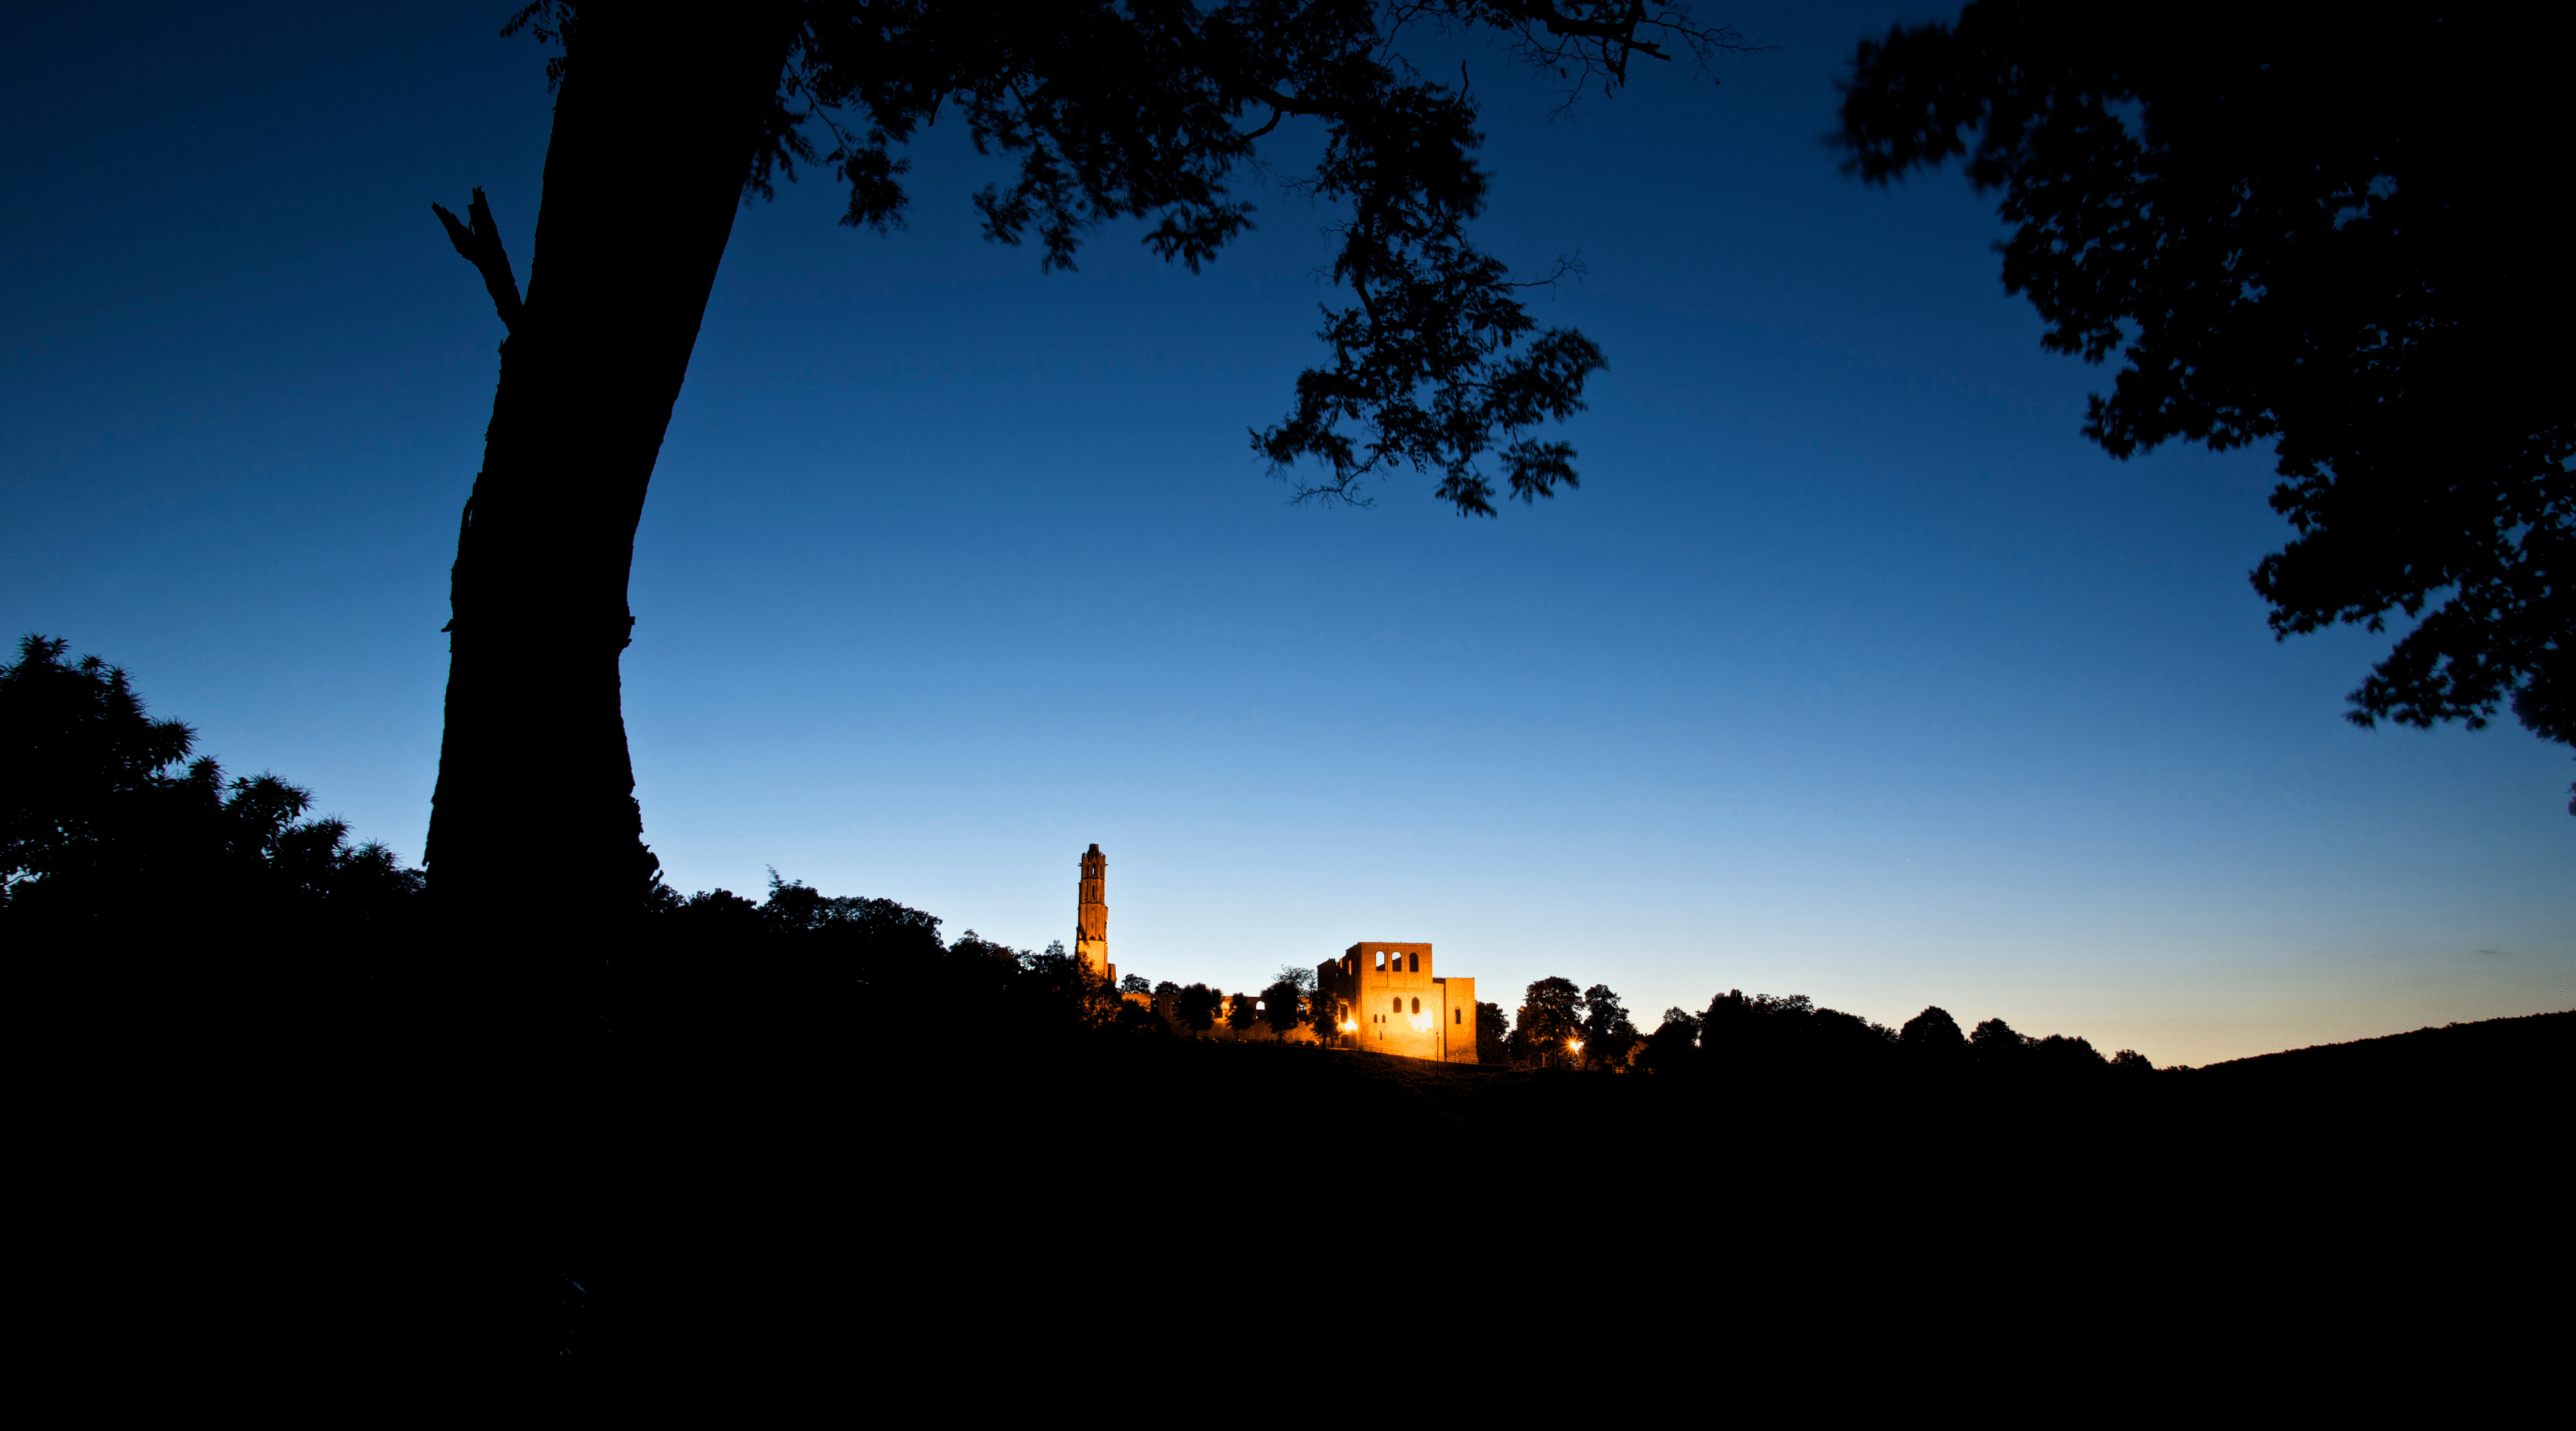 Klosterruine Limburg im Pfälzerwald, nachts